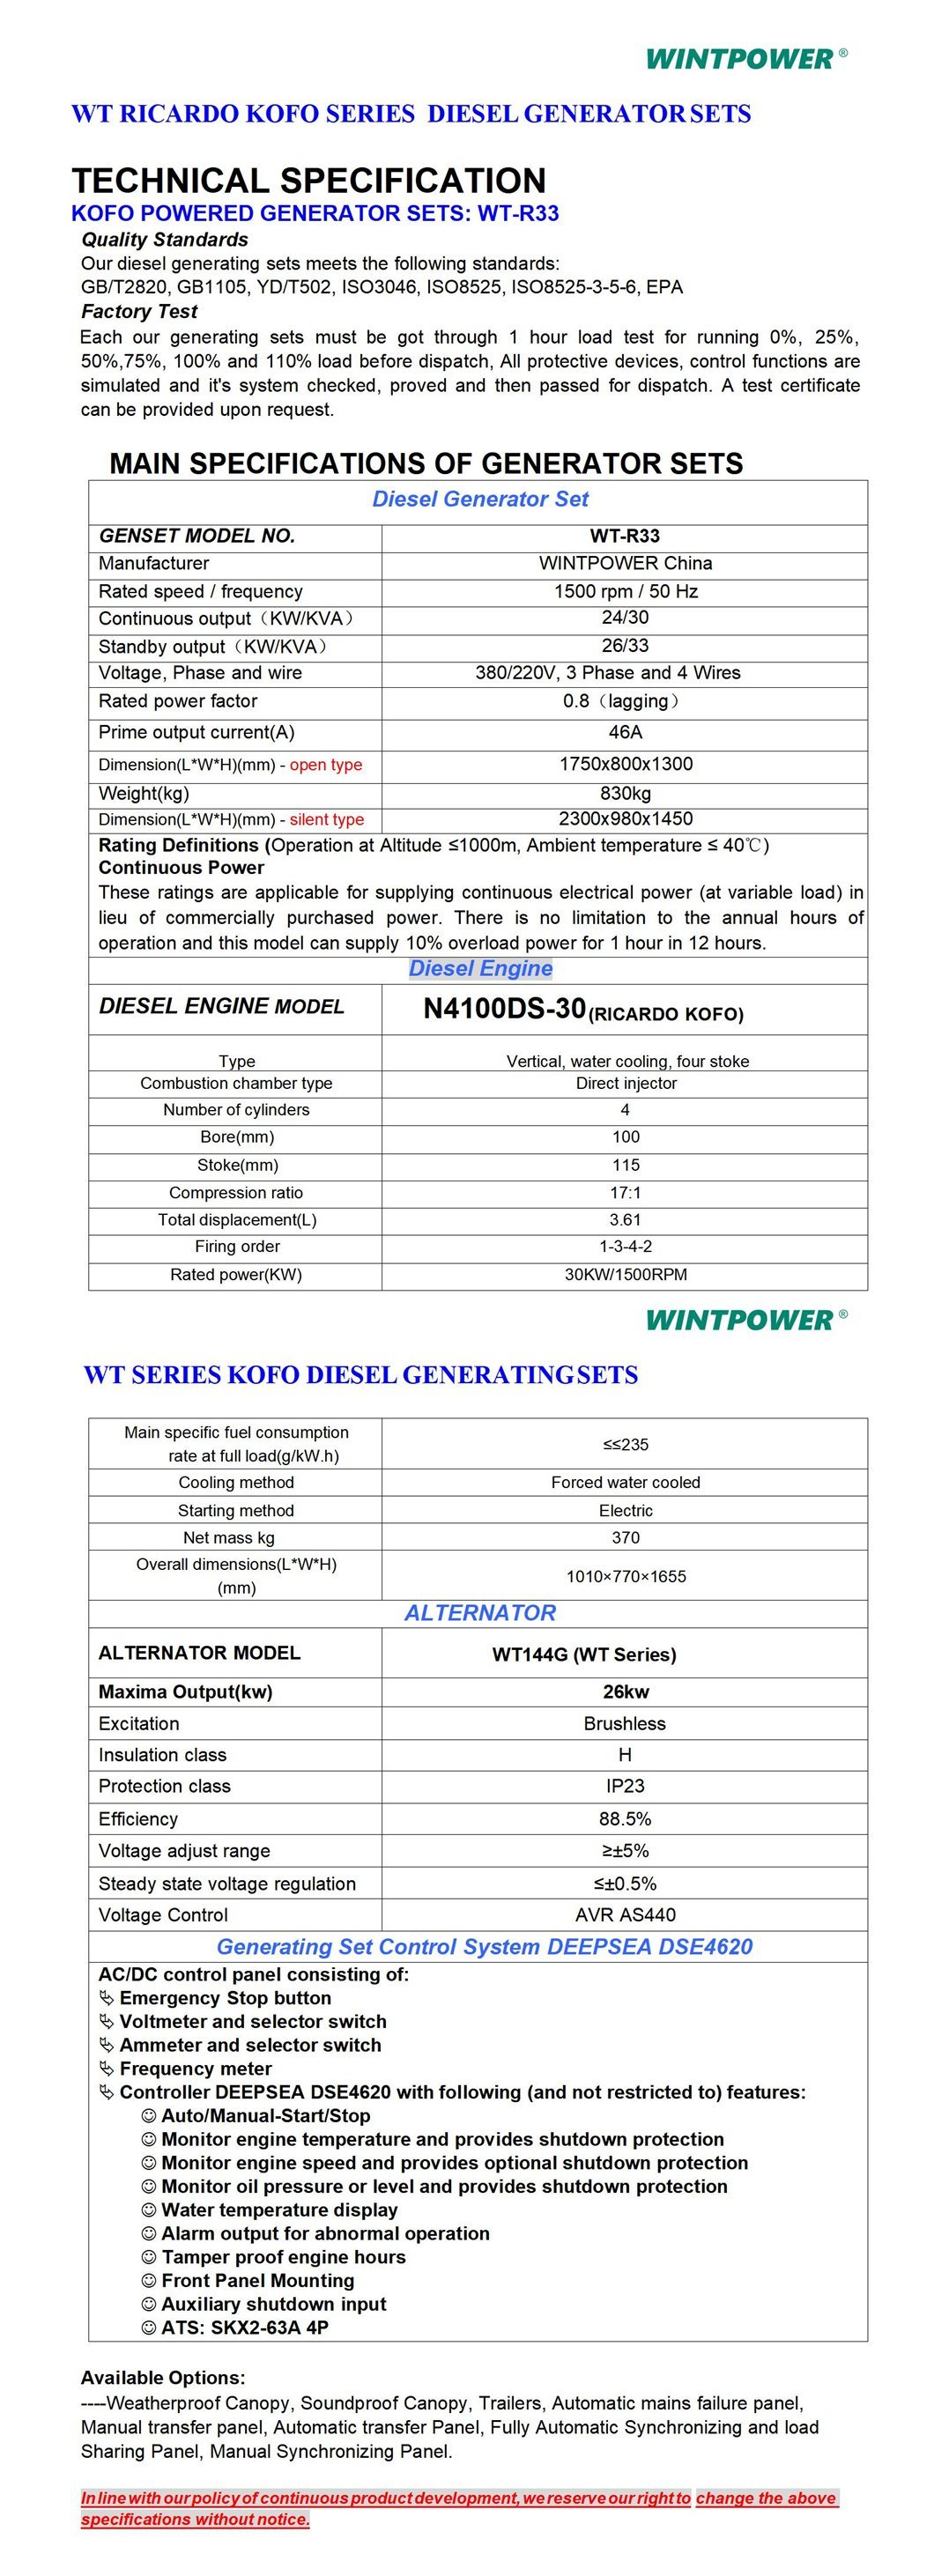 Weichai Kofo Ricardo Diesel Power Generator Set Dg Genset 275kVA 6126-42de 300kVA 6126A-260de 344kVA Wt12D-308e 413kVA Wt13-330de 440kVA Wt13-360de Wt13A-390de